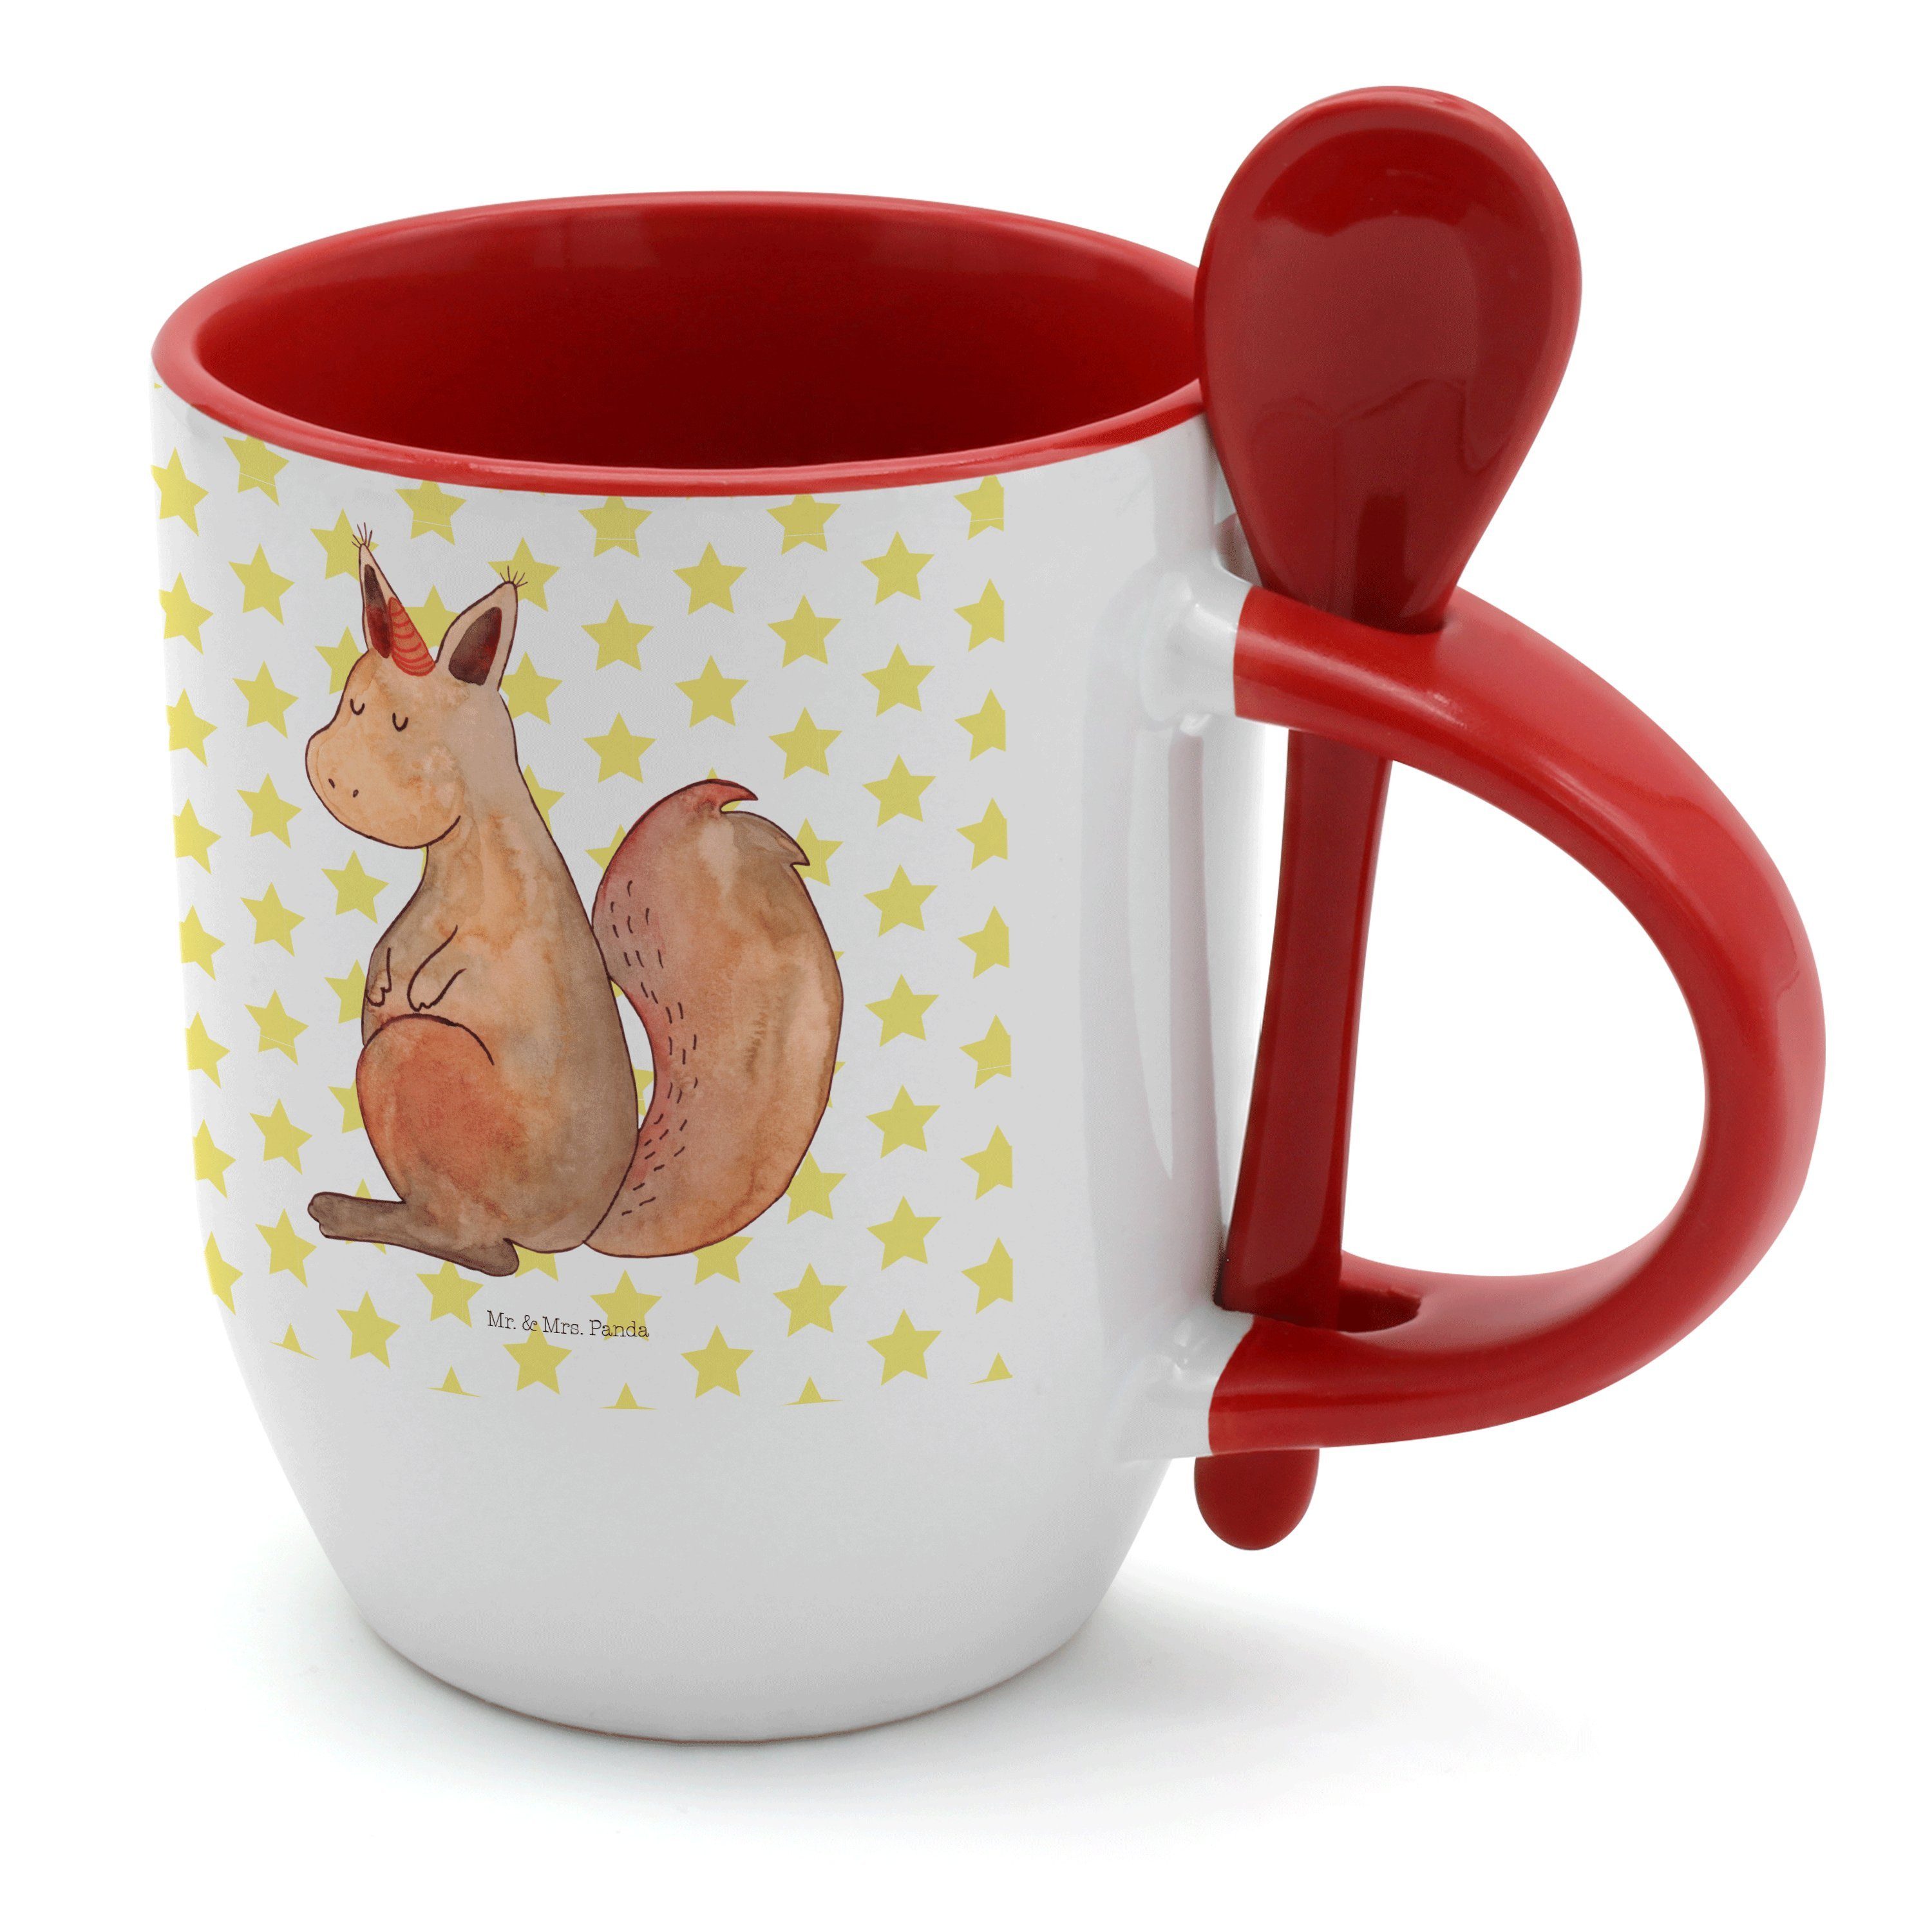 Mr. & Mrs. Panda Tasse Glaube - Weiß Eichhorn, - Einhörnchen Tasse Keramik Sp, mit Geschenk, Einhorn